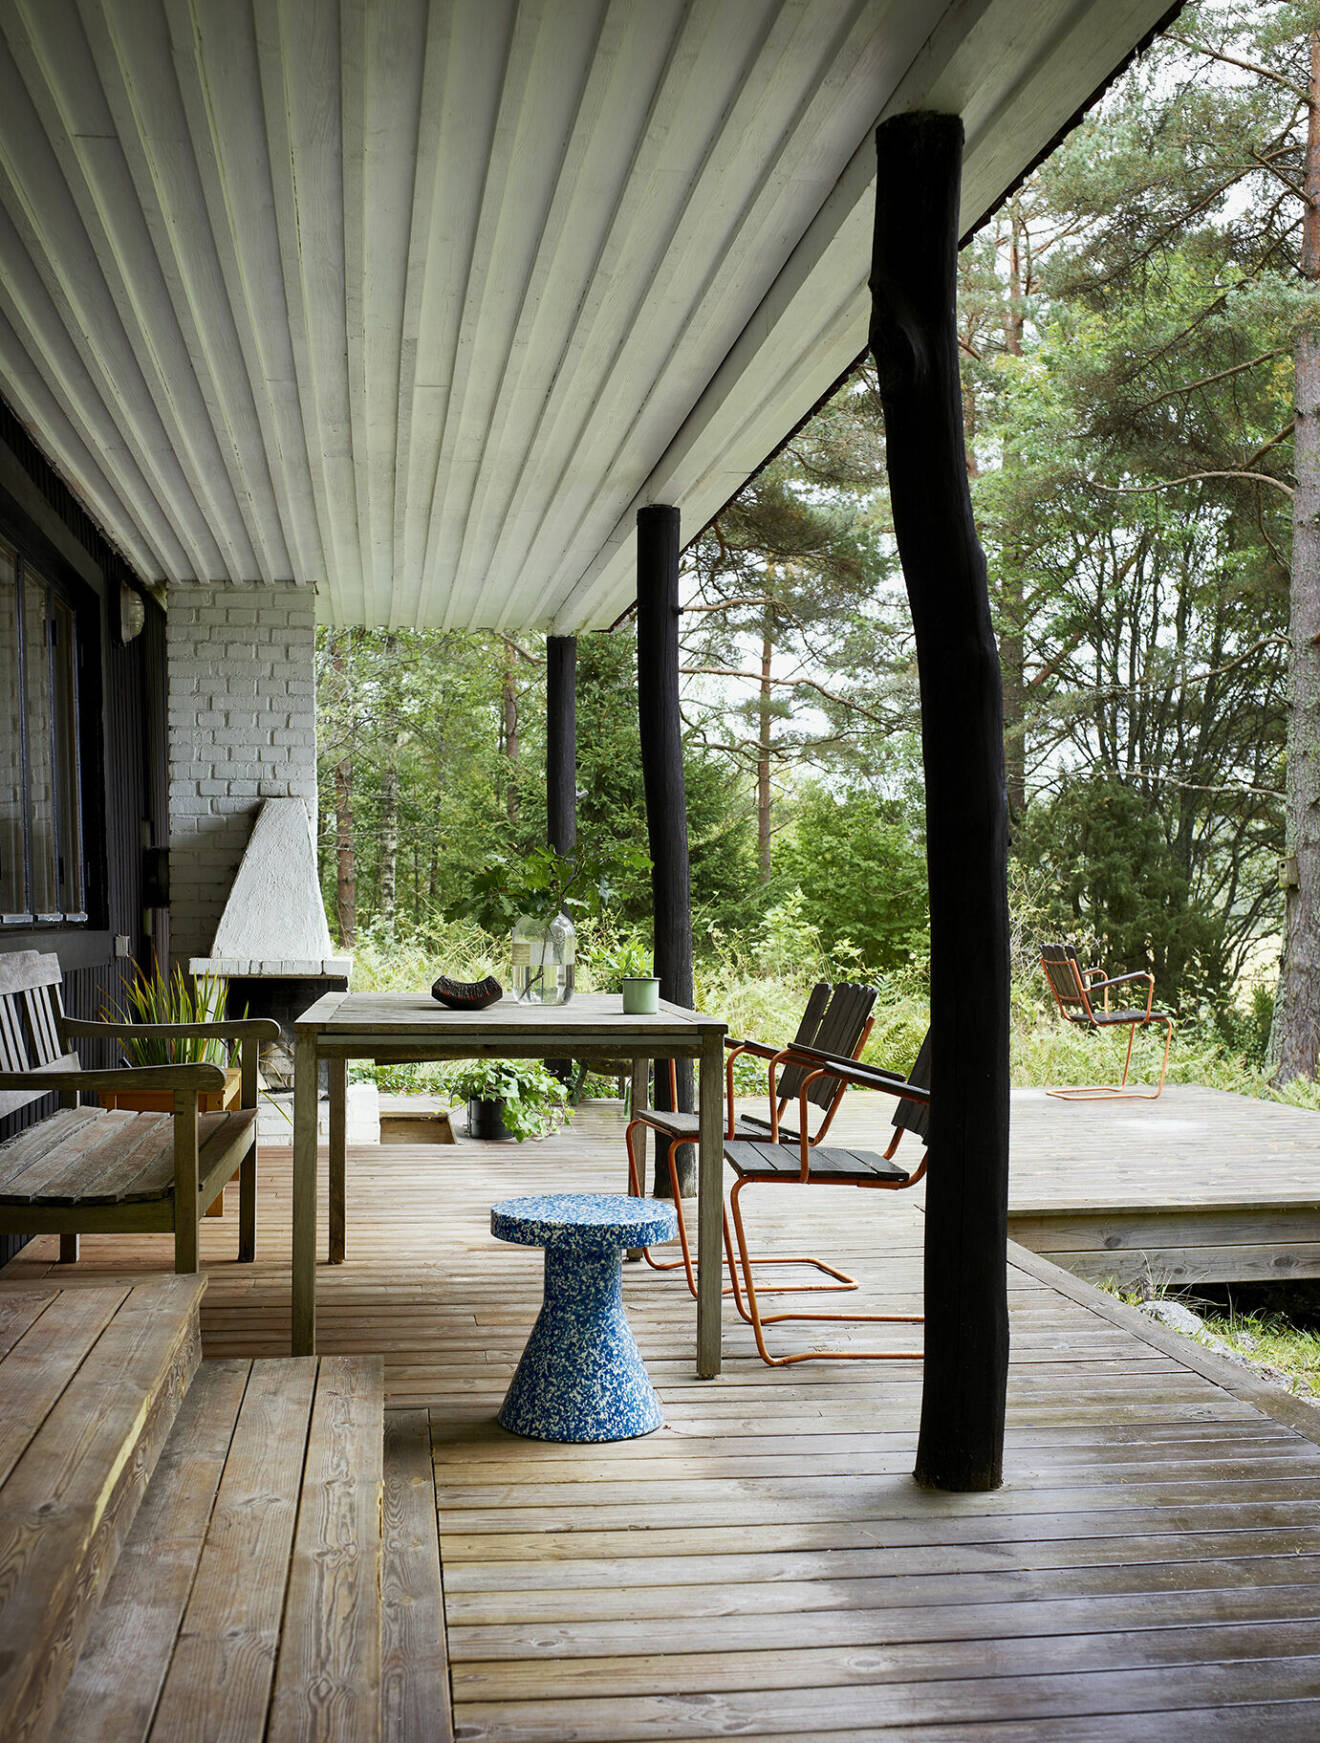 Det utdragna taket skapar en naturlig plats modellerad efter en veranda i den amerikanska södern. Den murade spisen används flitigt. Spräcklig pall, Normann Copenhagen.